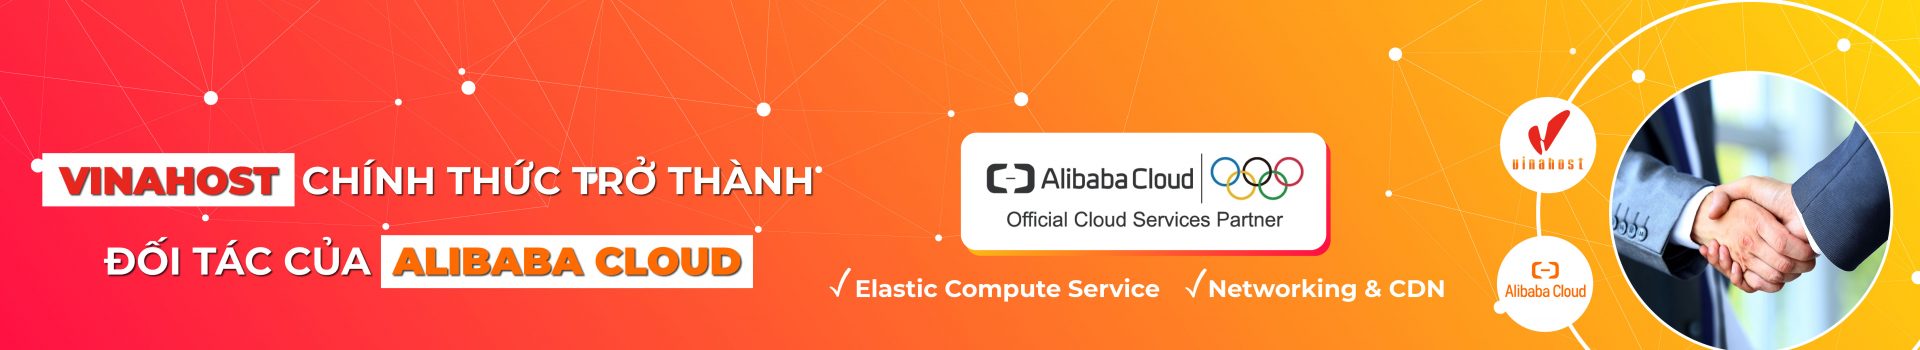 Alibaba Cloud CDN